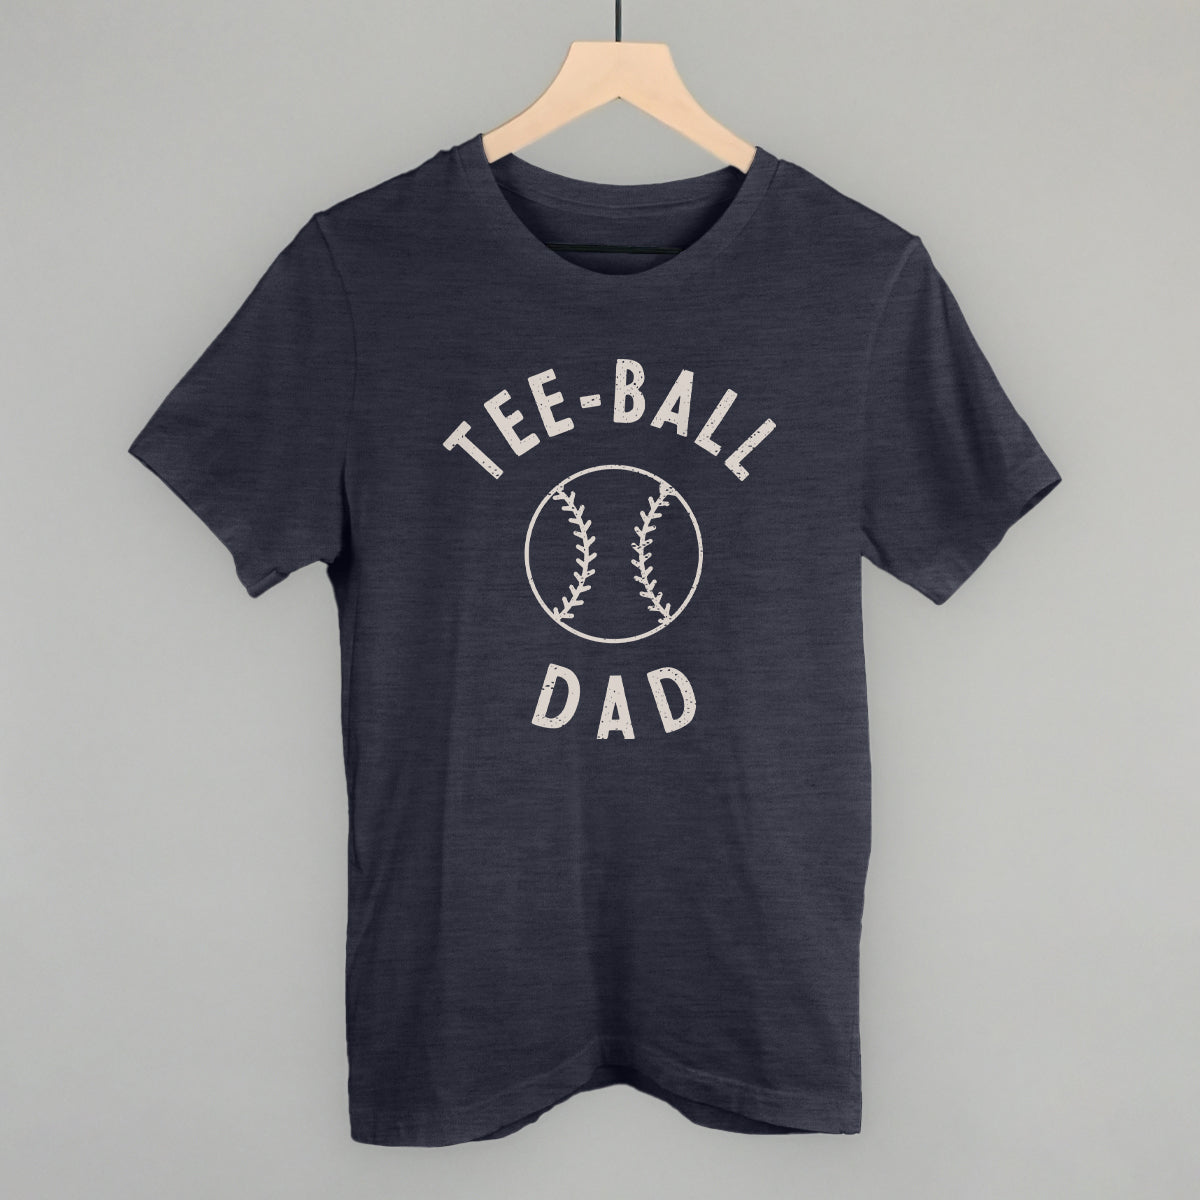 Tee-Ball Dad